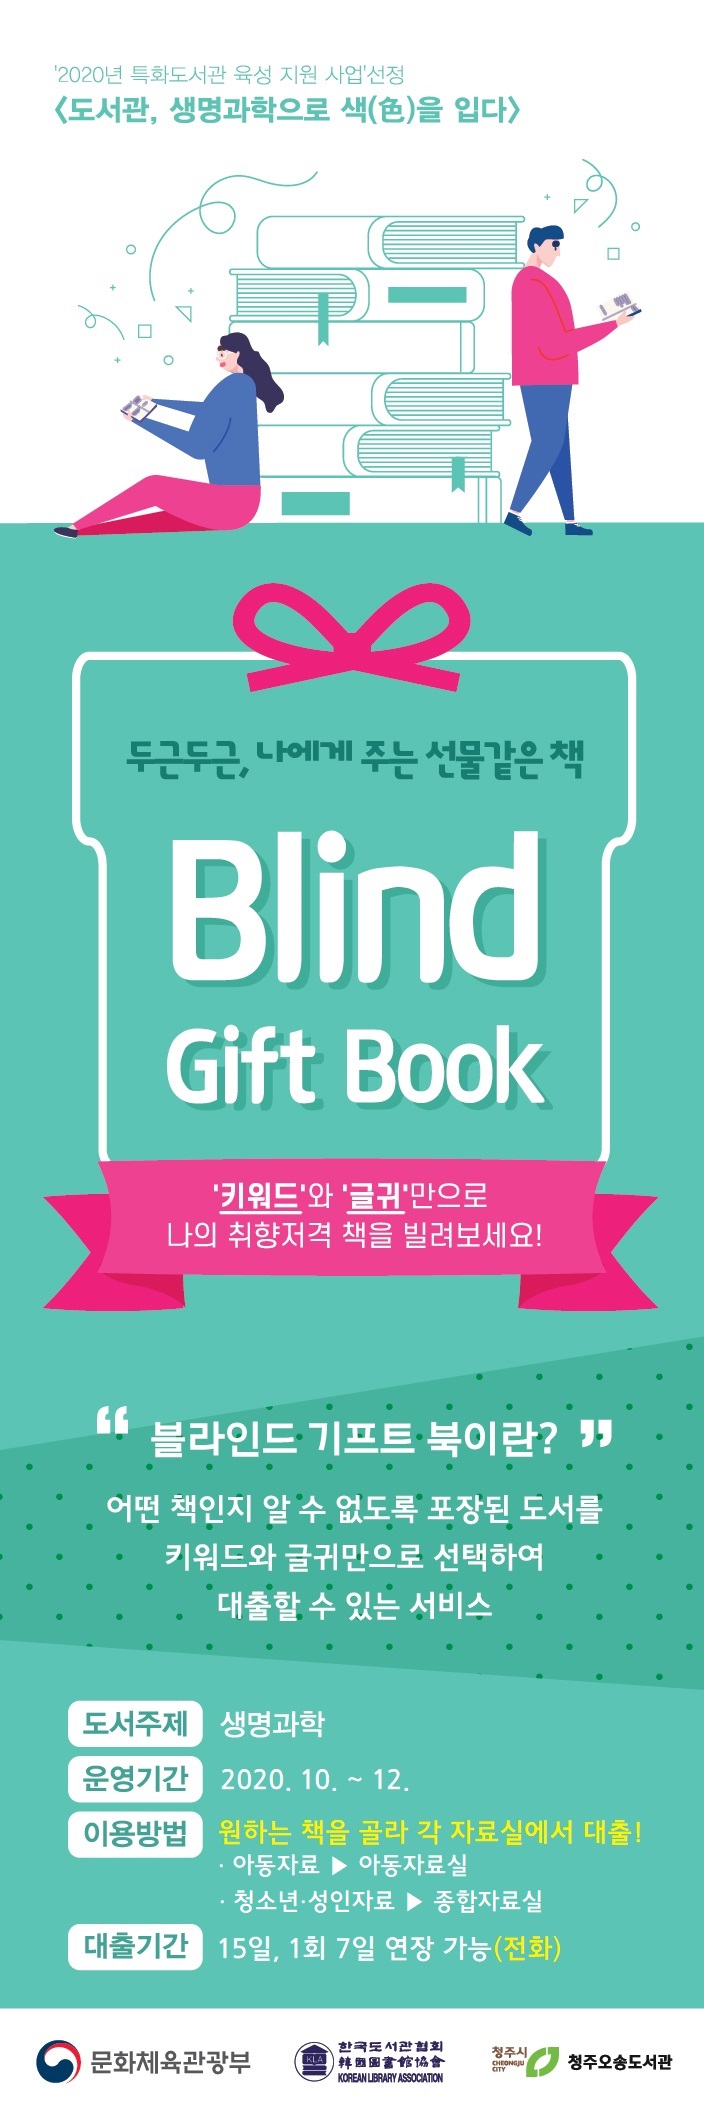 [오송도서관] 2020년 특화도서관 육성지원 사업 「Blind Gift Book」 서비스 안내